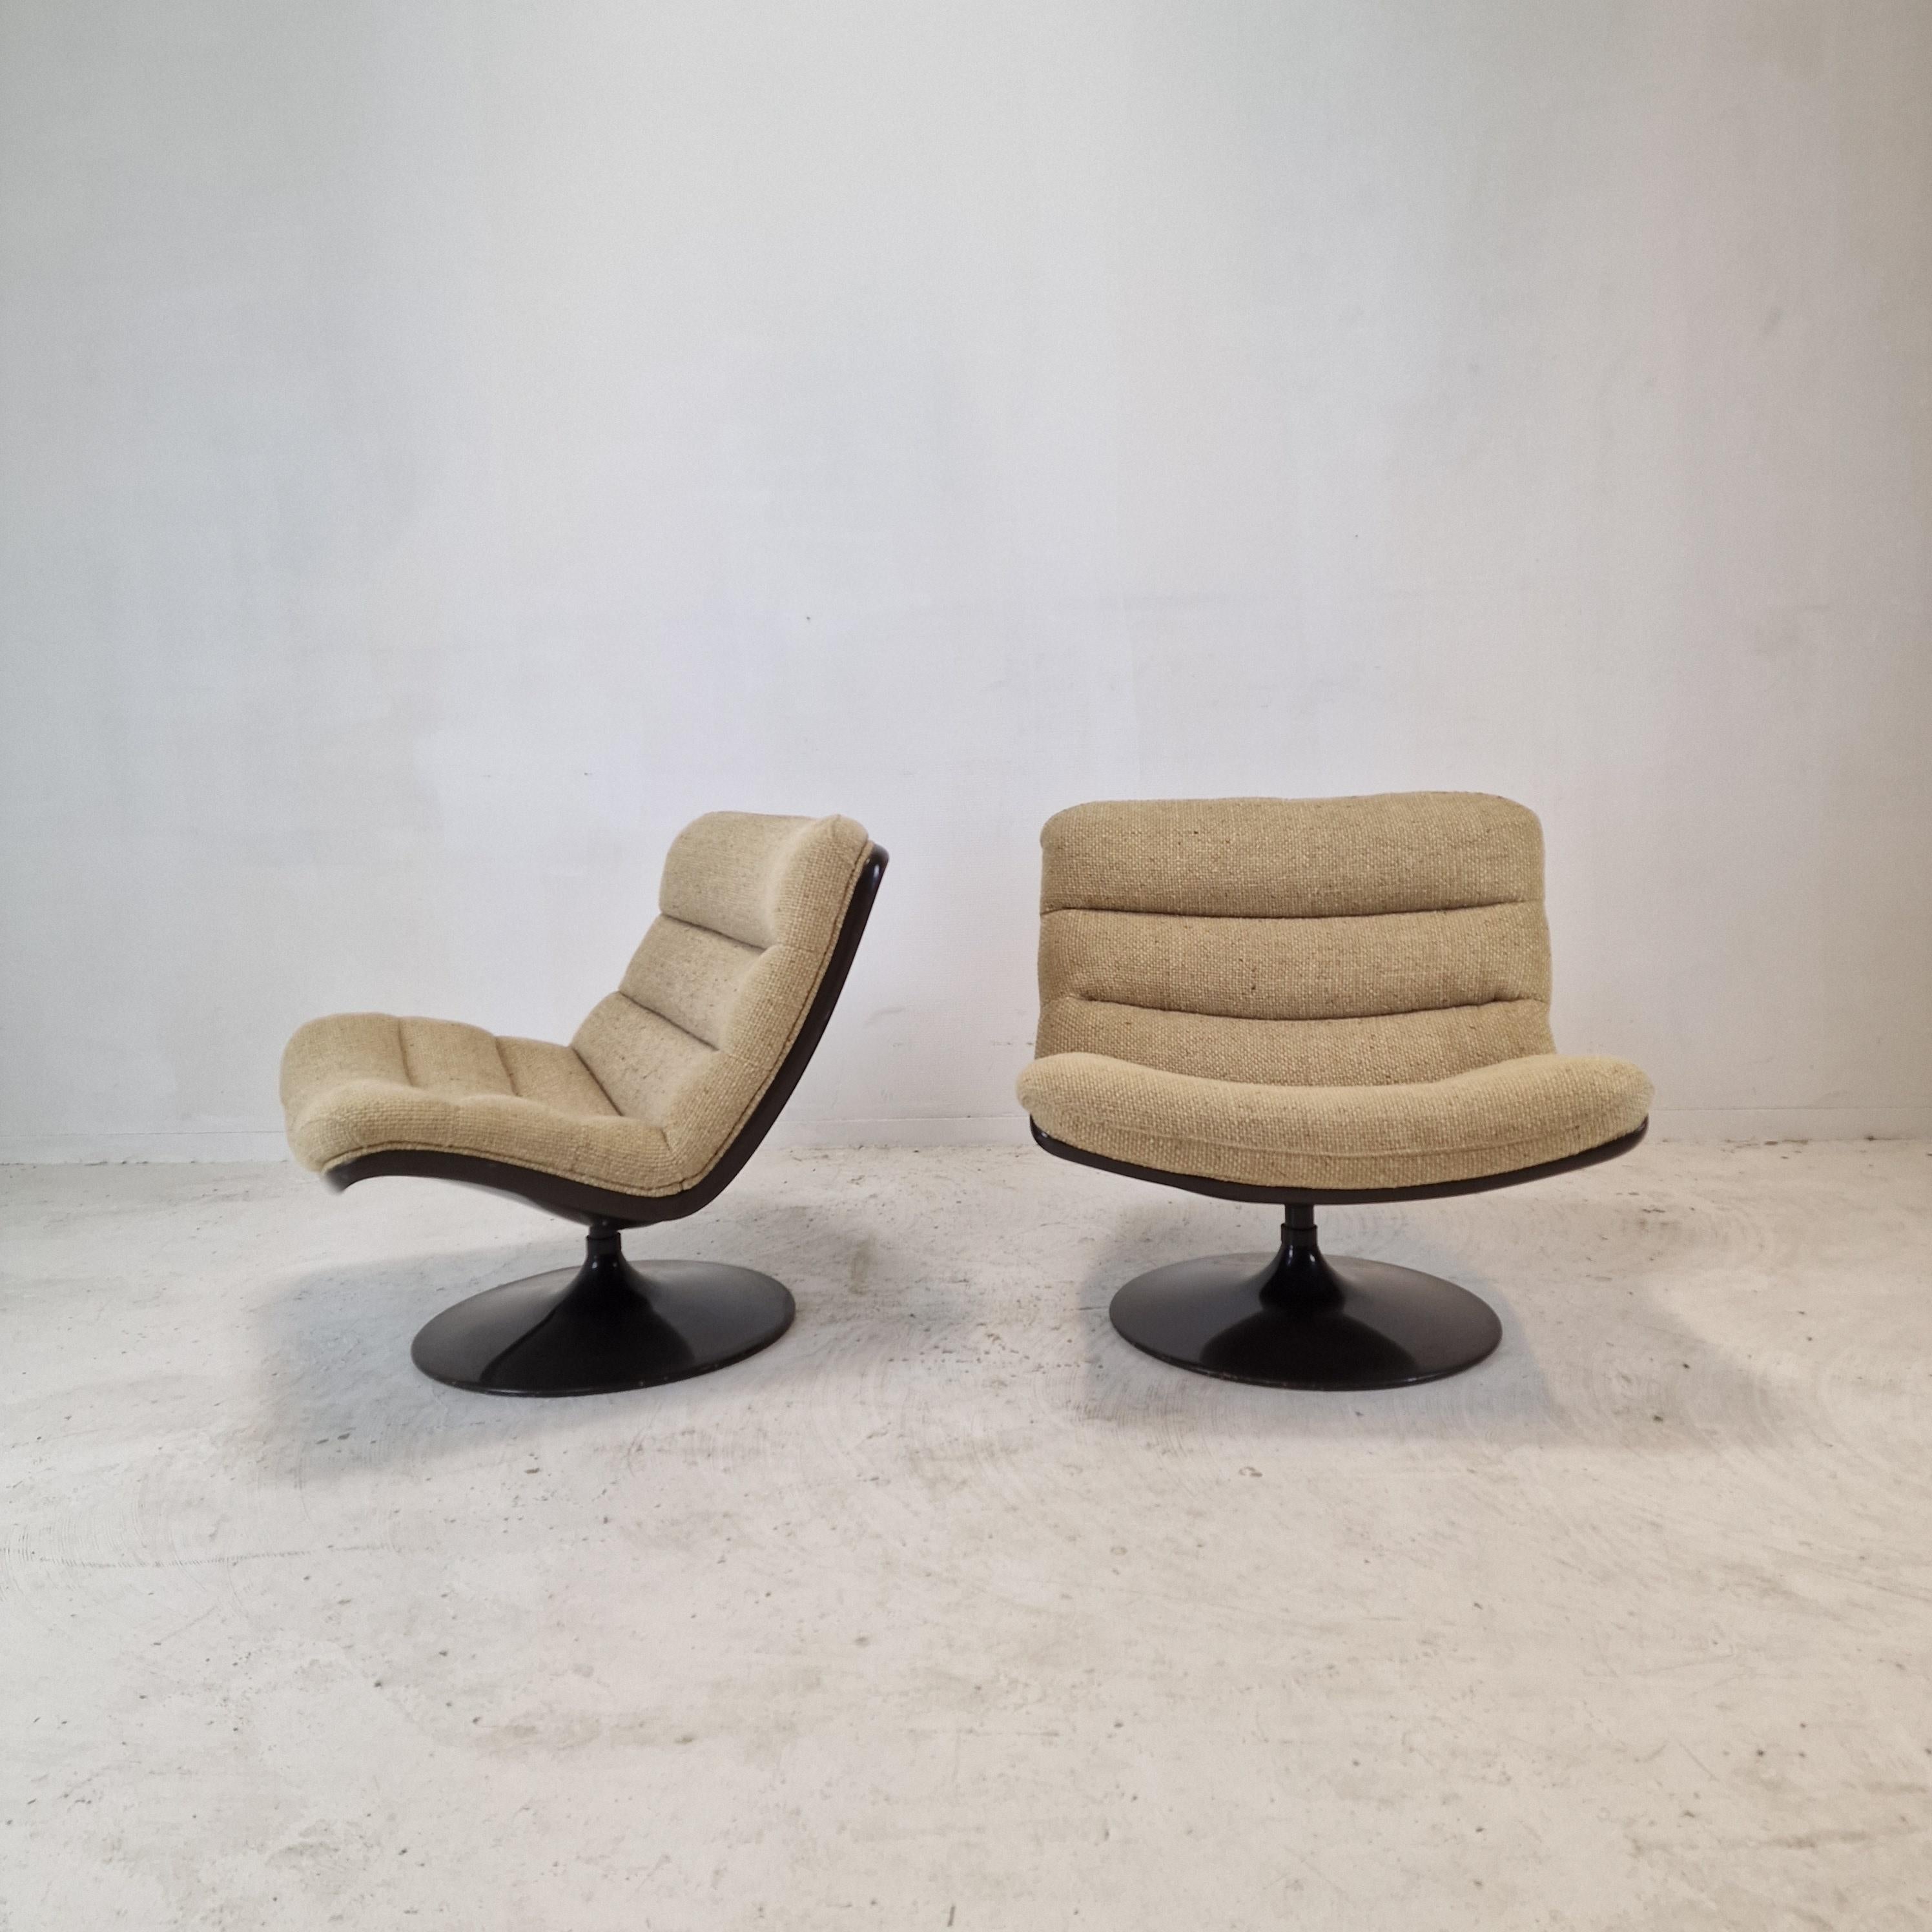 Sehr hübsches und bequemes Set aus zwei 975 Lounge Chairs.
Diese beliebten Stühle wurden in den 70er Jahren von dem berühmten Geoffrey Harcourt für Artifort entworfen.

Der makellose braune Schalensitz mit dito tulpenförmigem Untergestell bildet